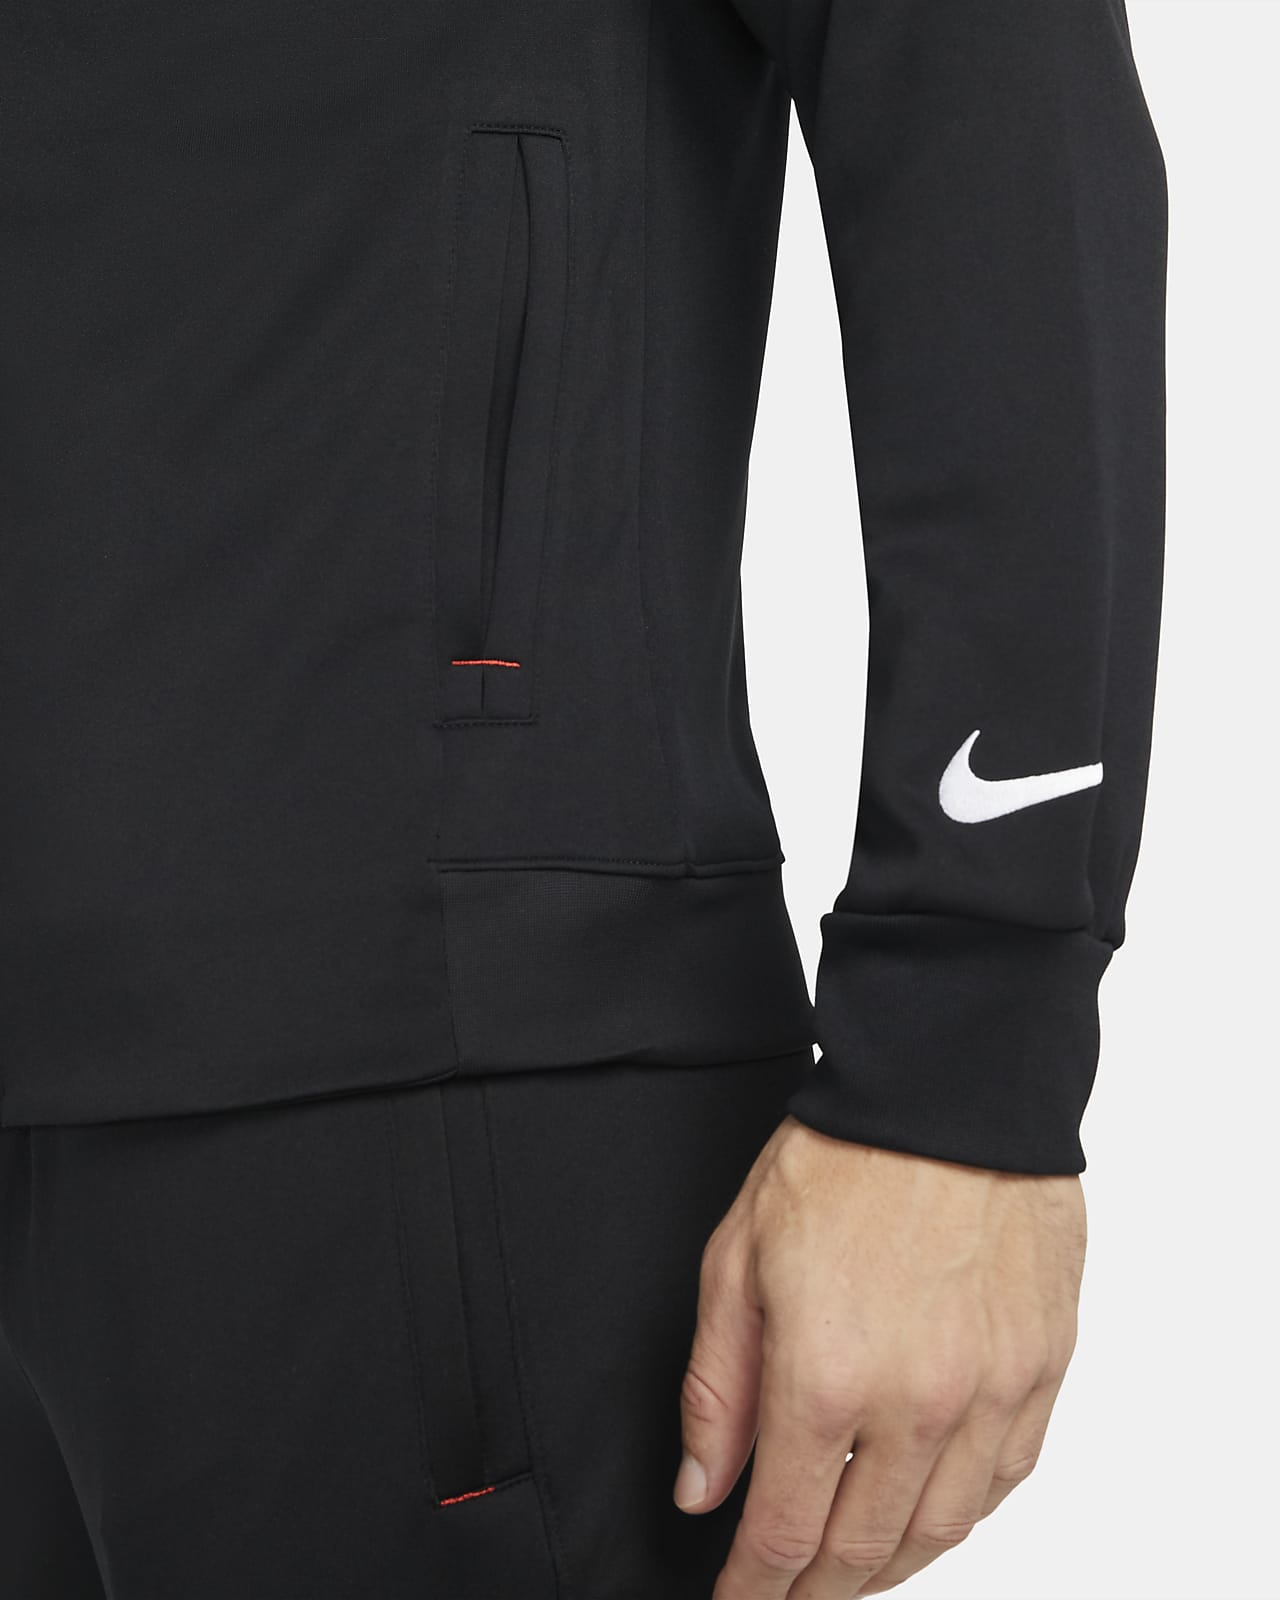 Aangepaste Onschuld Pech Nike F.C. Fußball-Trainingsanzug für Herren. Nike AT